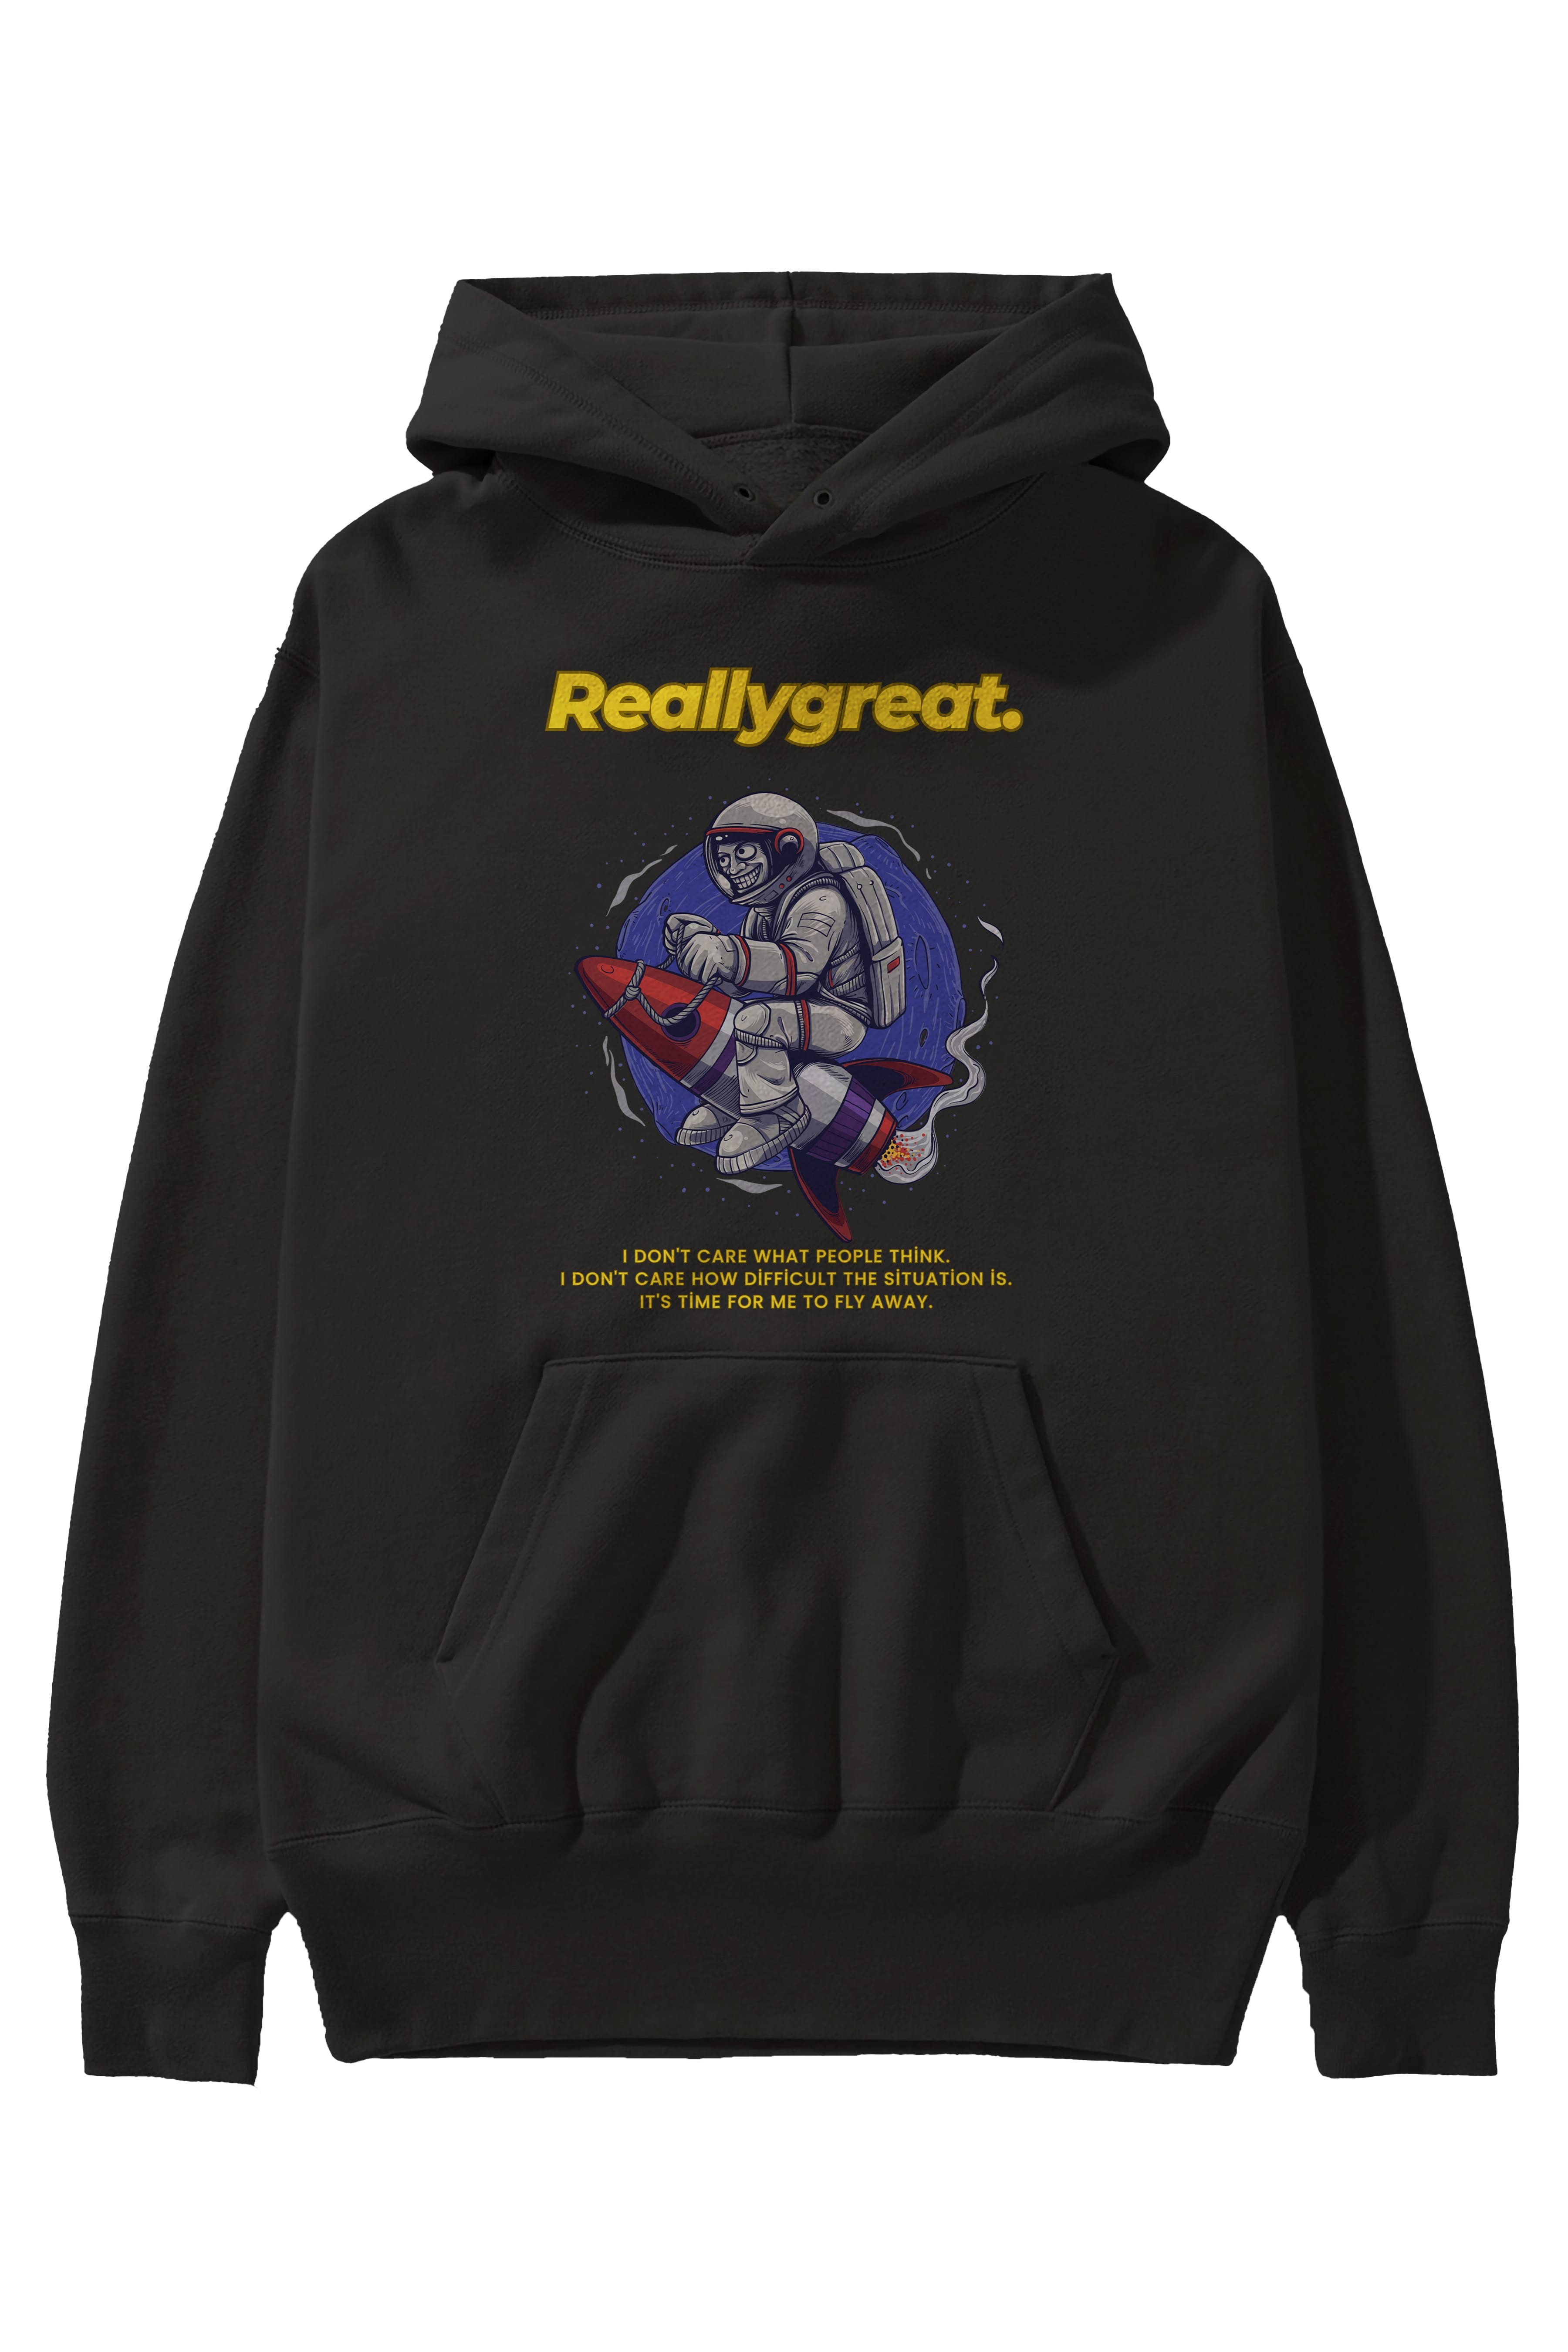 Reallygreat Astronaut Ön Baskılı Oversize Hoodie Kapüşonlu Sweatshirt Erkek Kadın Unisex